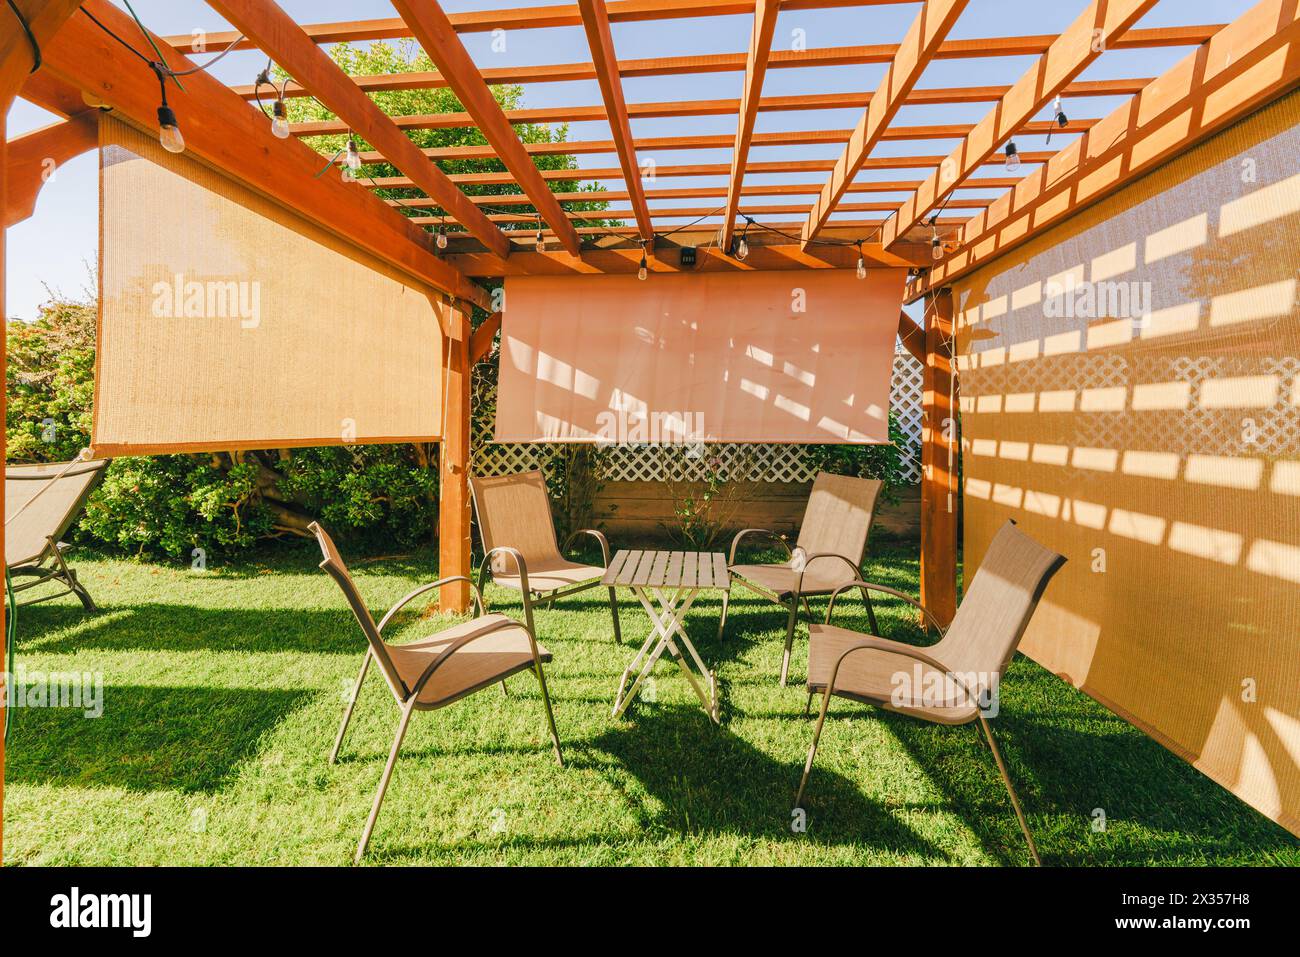 Pergola aus Holz mit Gartenmöbeln und Hängelampen in einem Garten, der Schatten auf den Boden wirft. Stockfoto